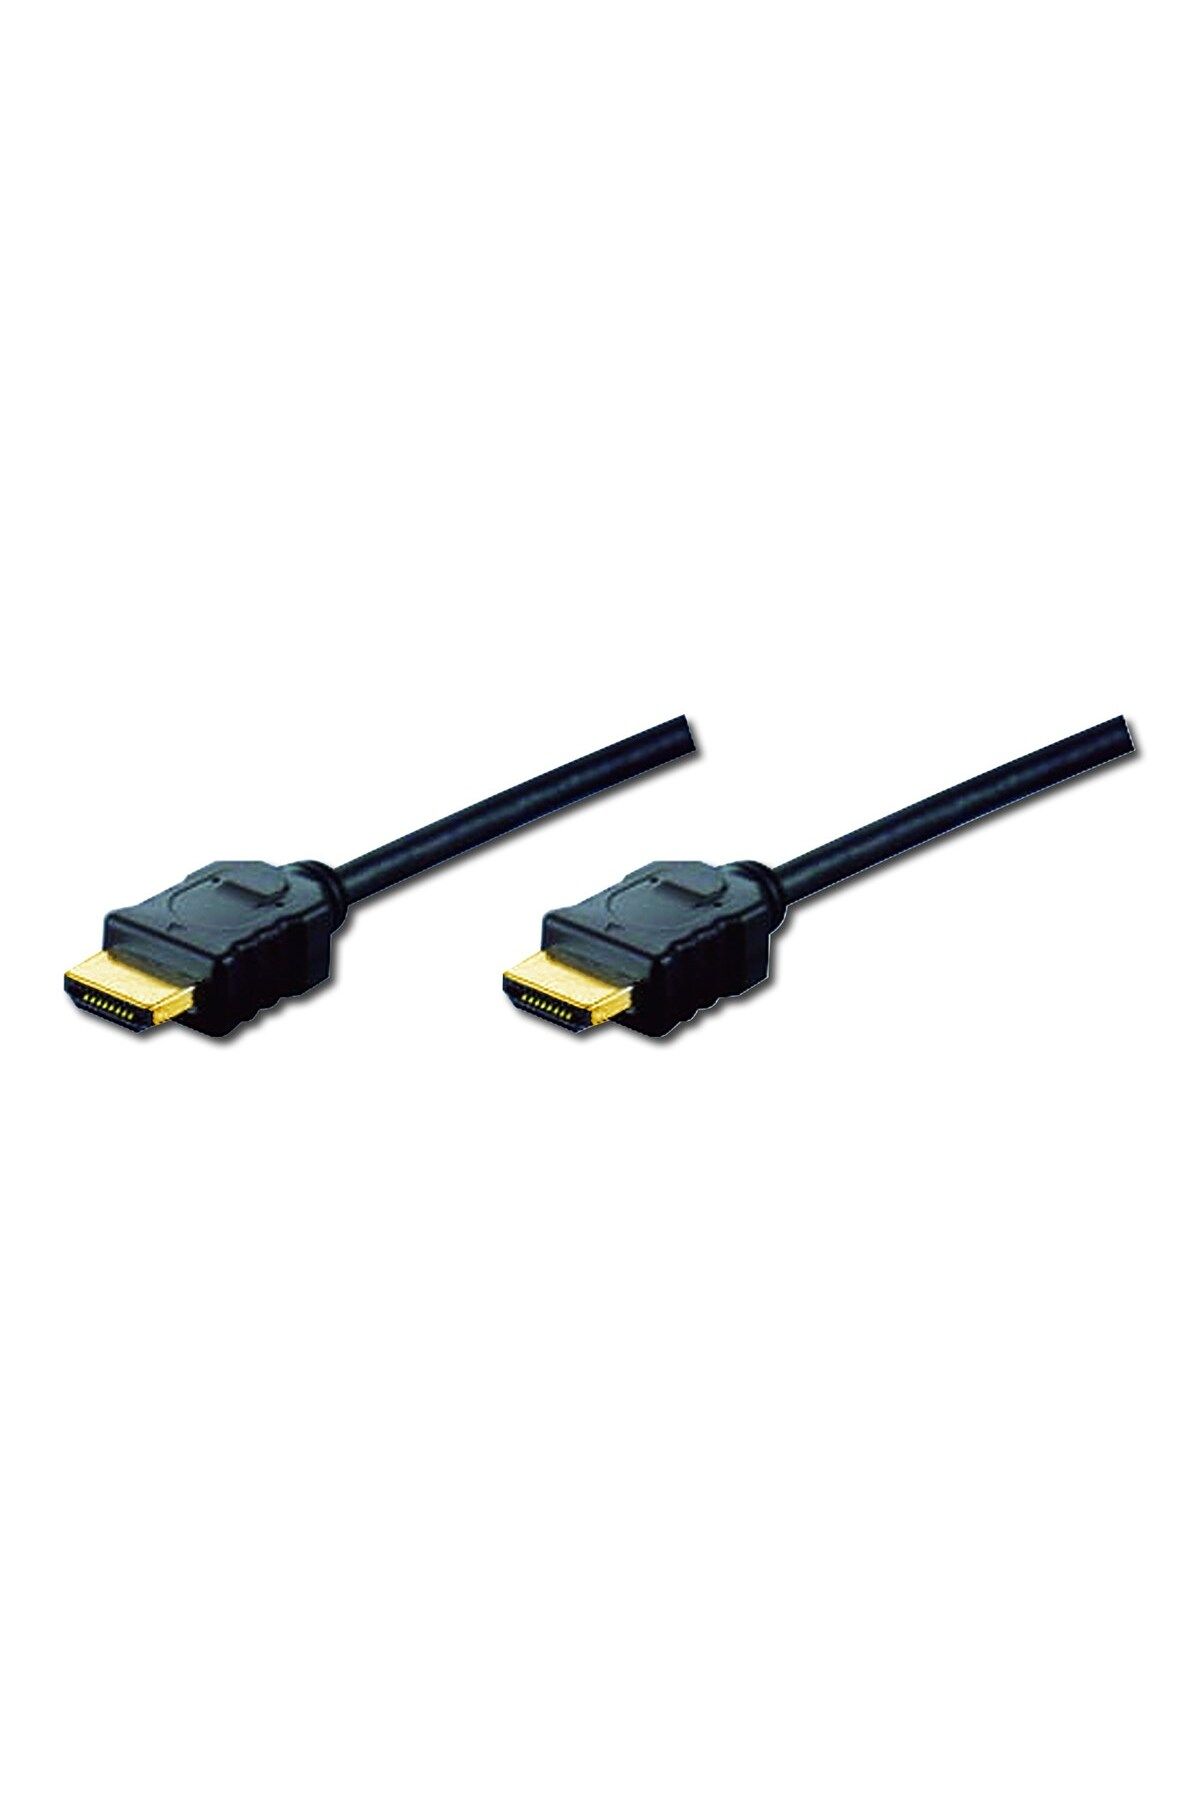 Assmann Digitus Hdmı High Speed With Ethernet Bağlantı Kablosu (HDMI 1.3), 1080p Full Hd, Hdmı Tip A Erkek -